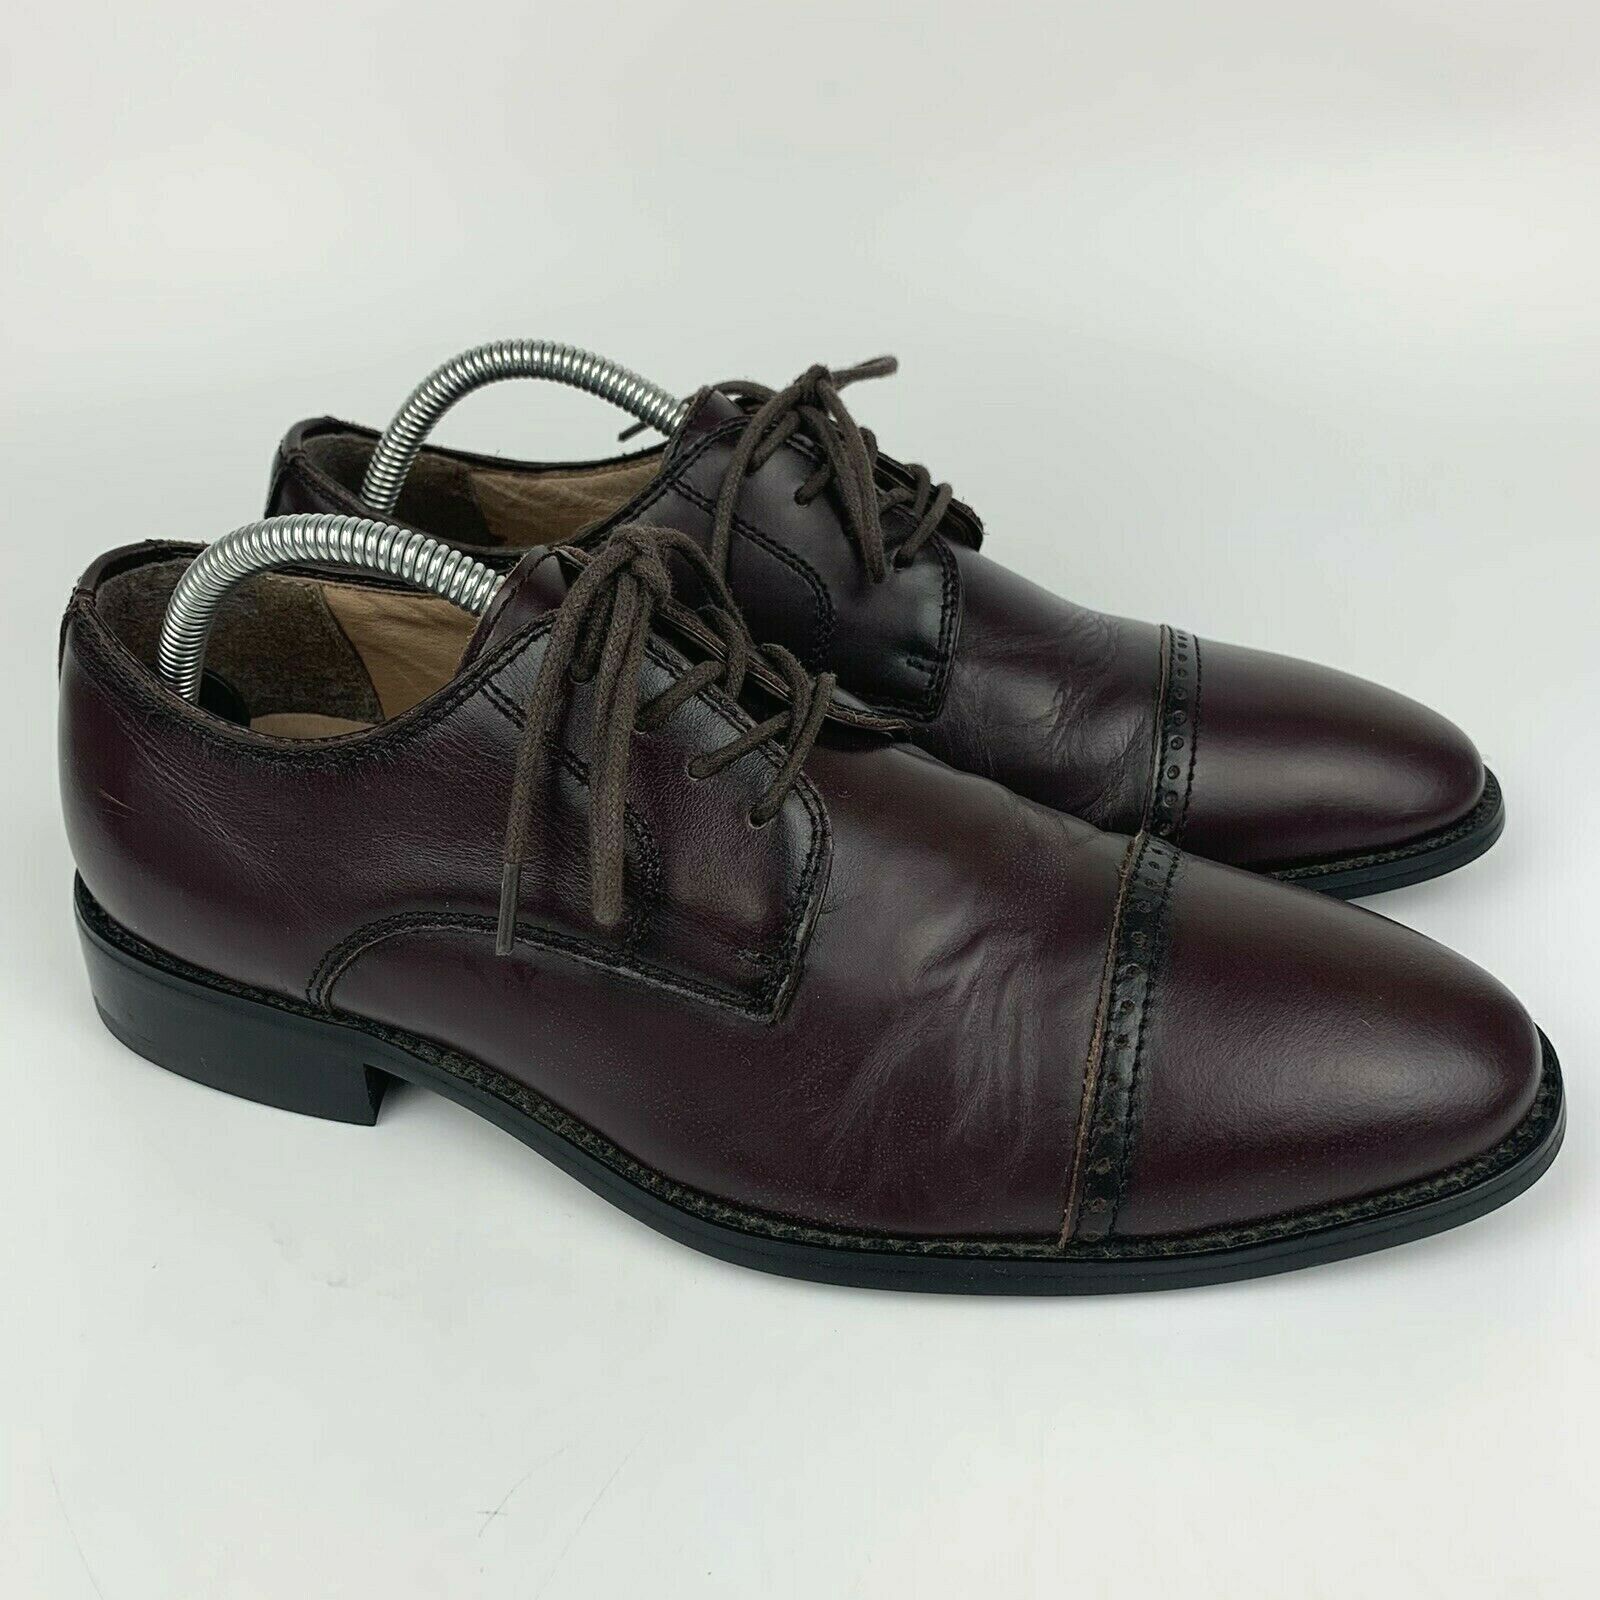 Joseph Abboud Brown Leather Cap Toe Lace Up Oxford Dress Shoes Men’s Size 9 M